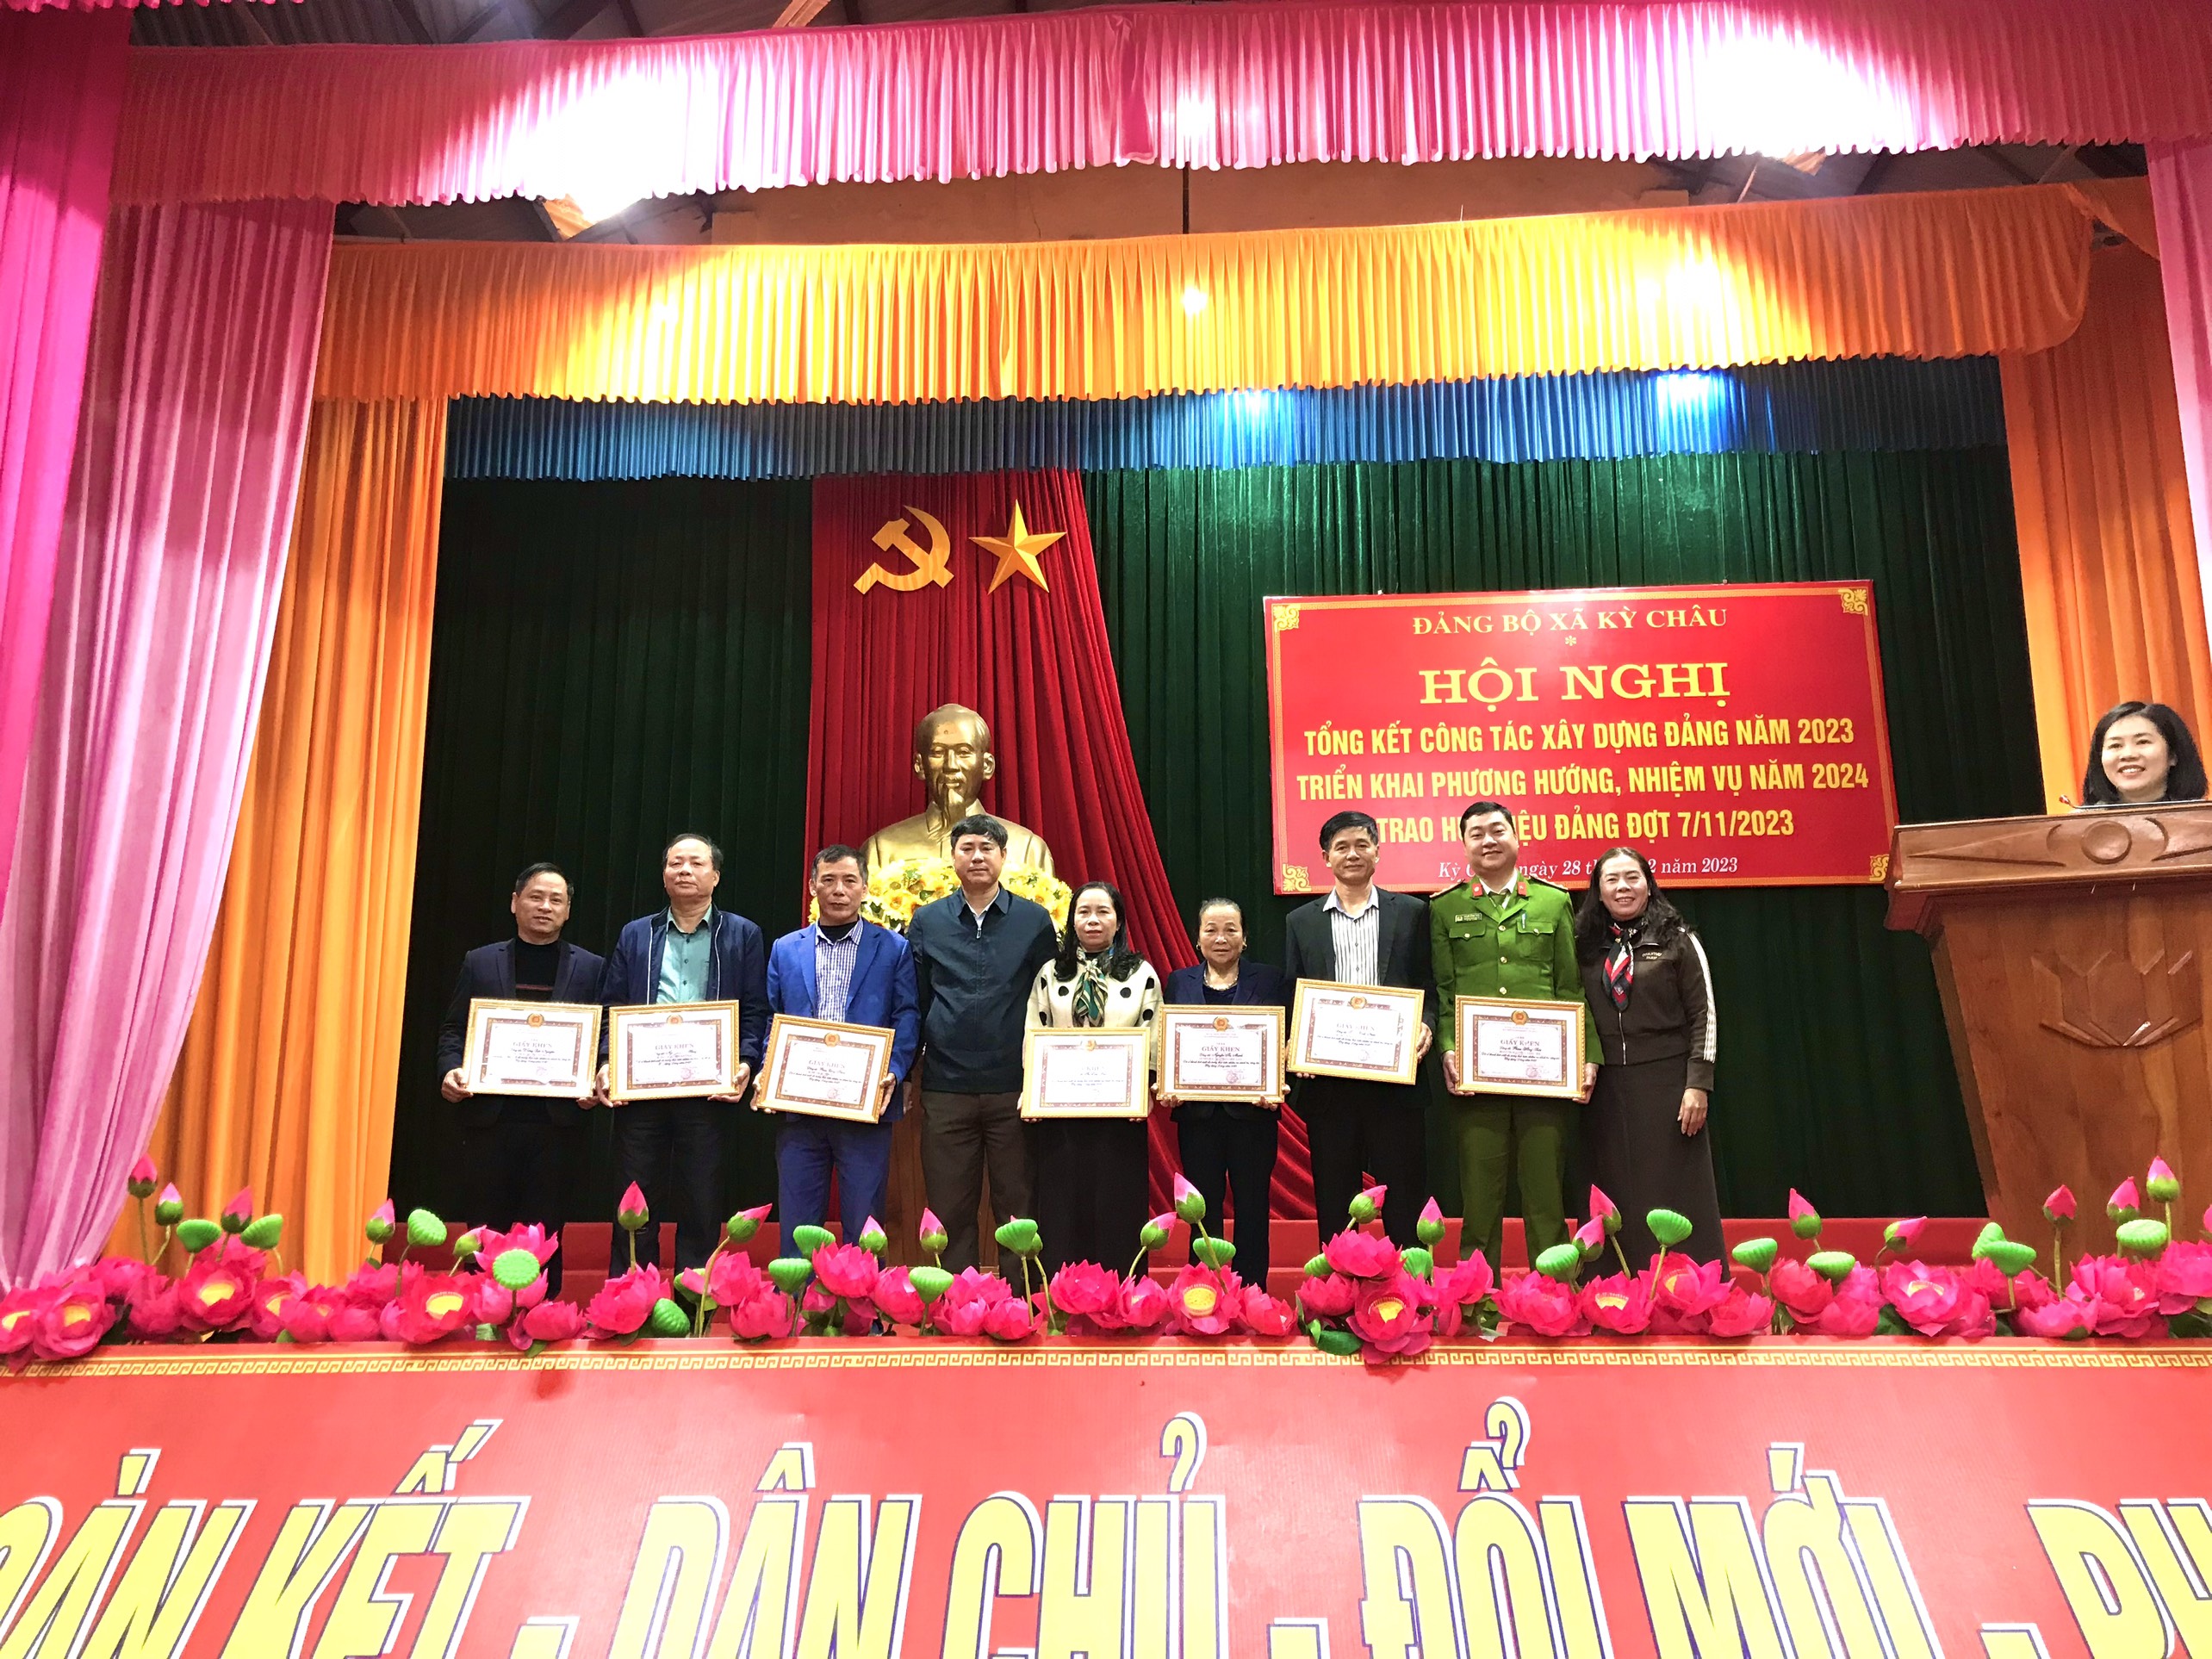 Hội nghị tổng kết công tác xây dựng Đảng năm 2023, triển khai nhiệm vụ công tác Đảng năm 2024 Đảng bộ xã Kỳ Châu, huyện Kỳ Anh, tỉnh Hà Tĩnh